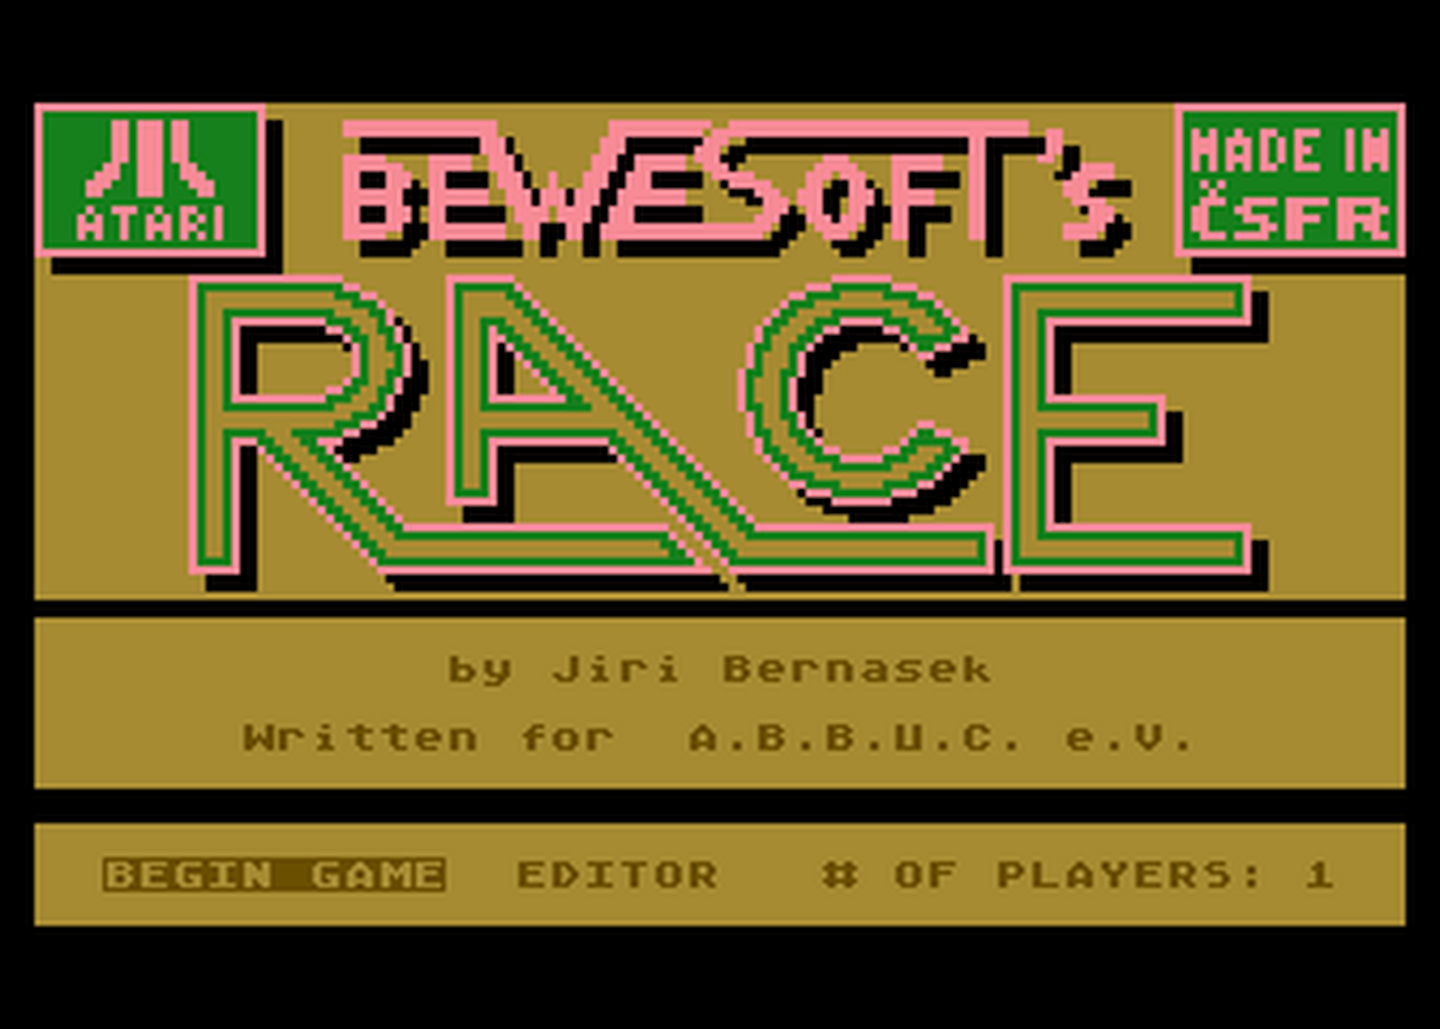 Atari GameBase Bewesoft's_Race ABBUC